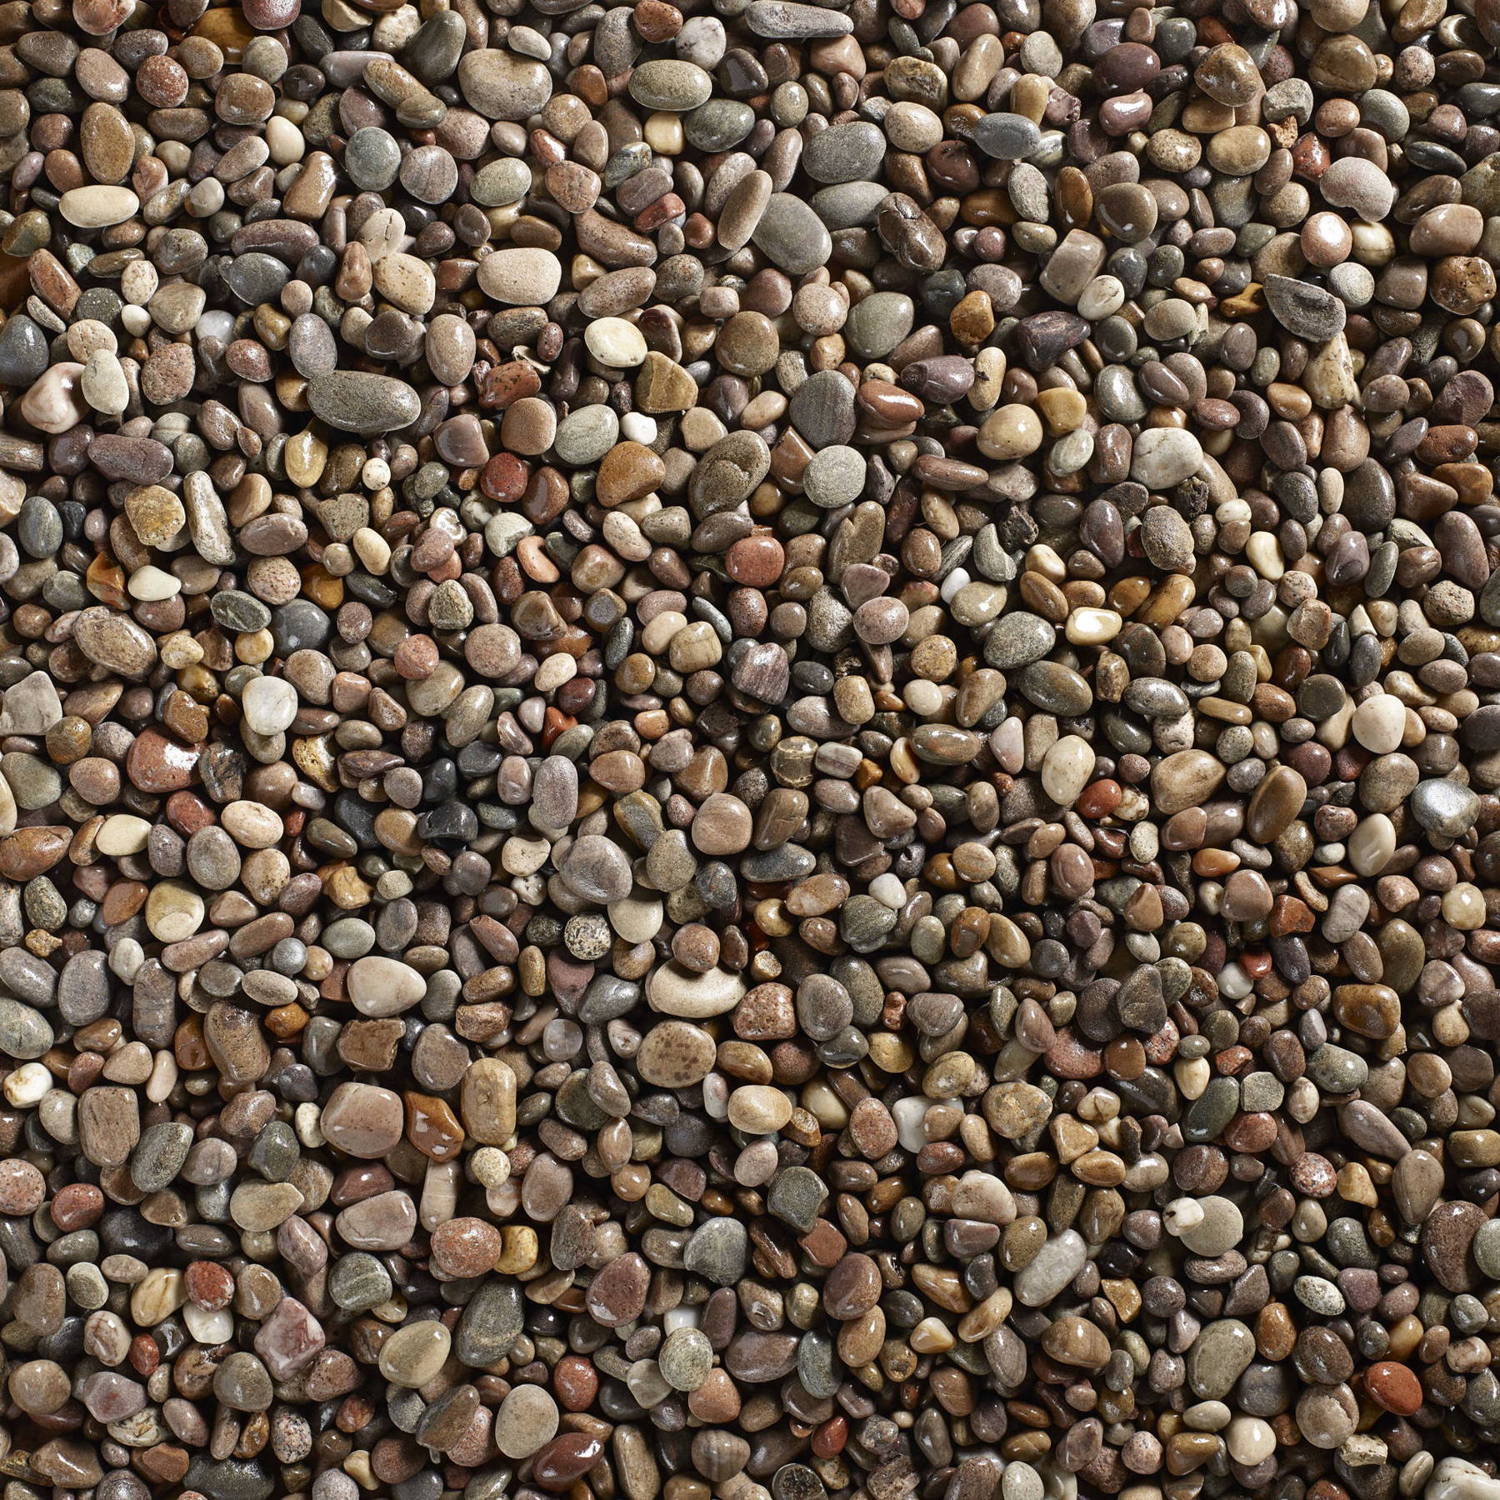 Scottish Tweed Decorative Pebbles Stones Wet